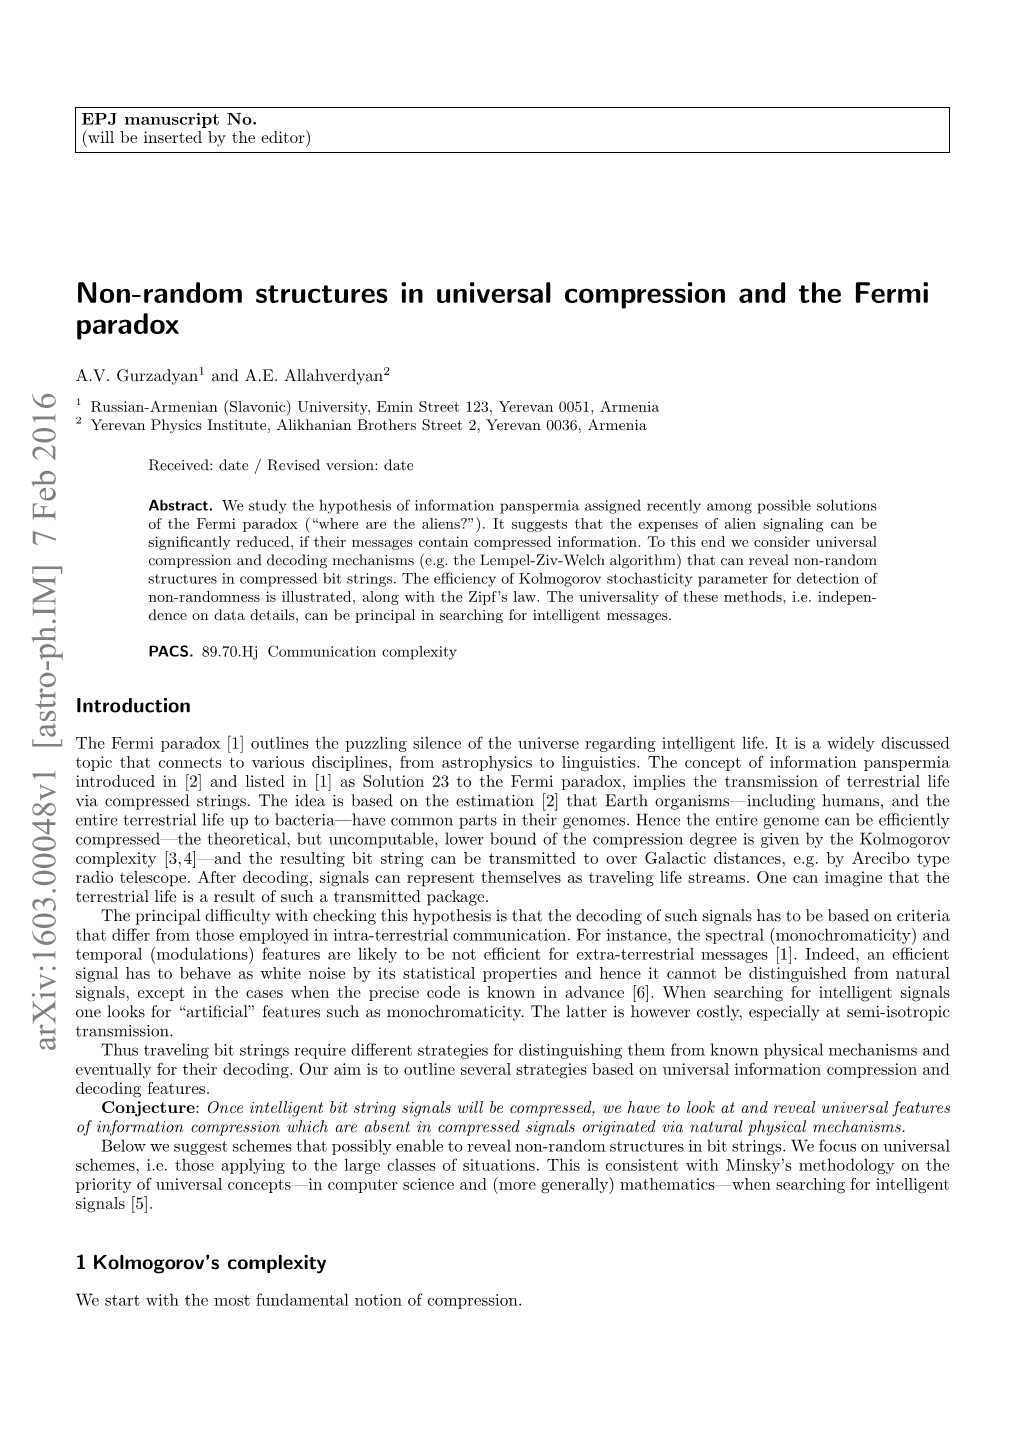 Non-Random Structures in Universal Compression and the Fermi Paradox